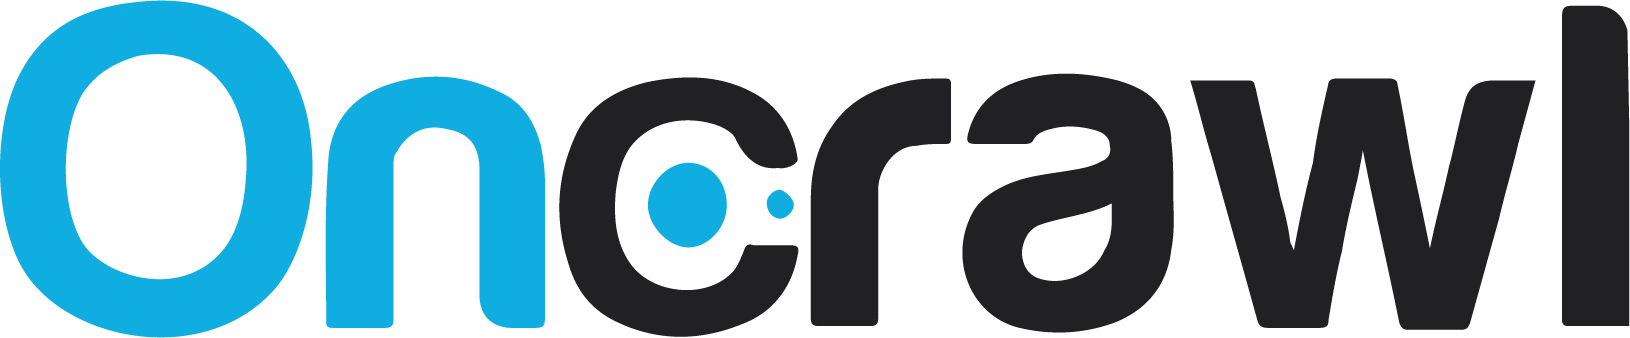 OnCrawl_Logo